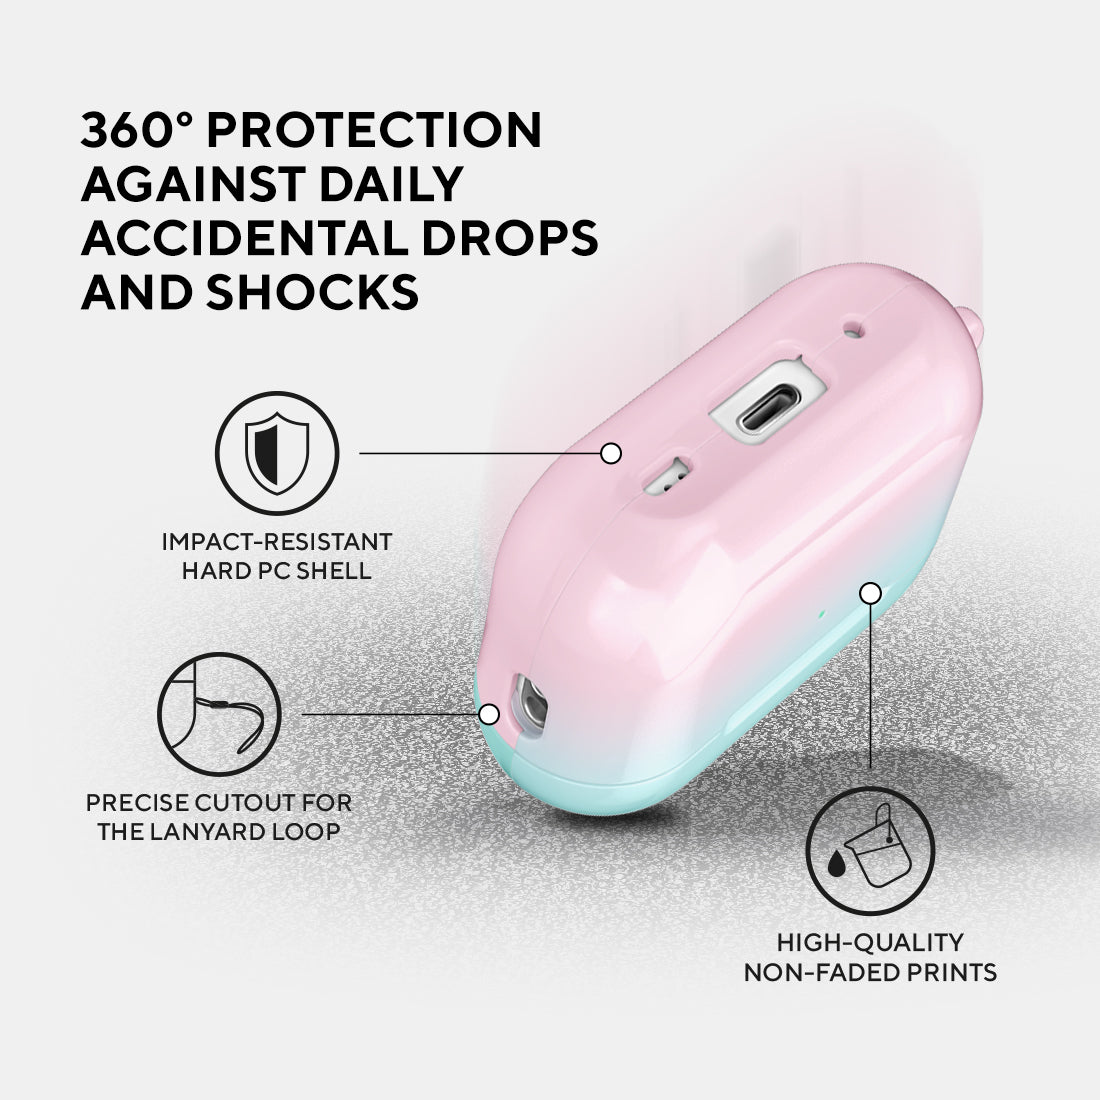 藍粉紅粉彩 | 客製化 AirPods Pro 2 耳機保護套